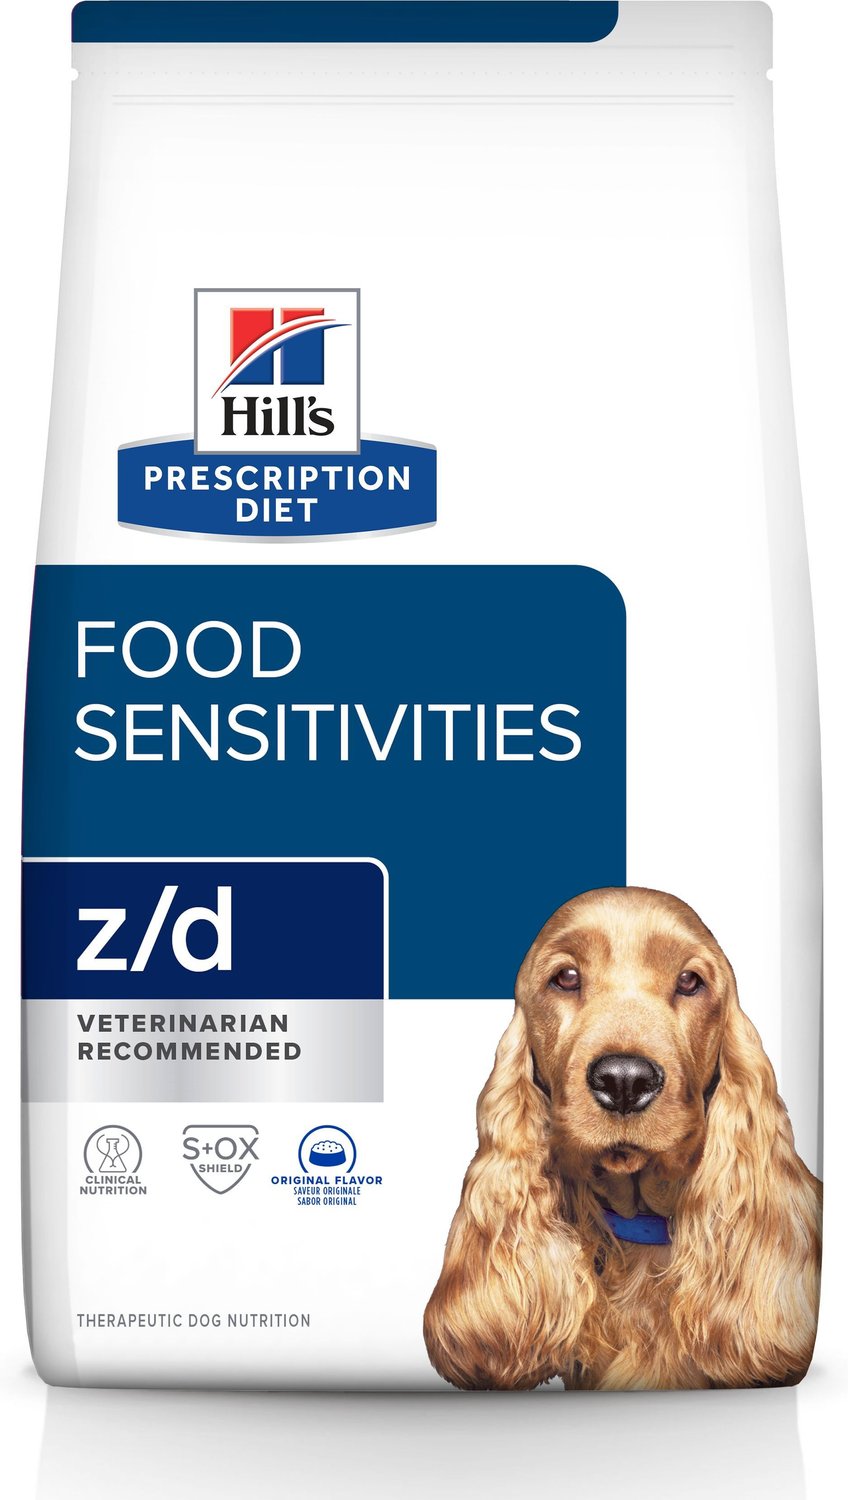 hydrolyzed dog food